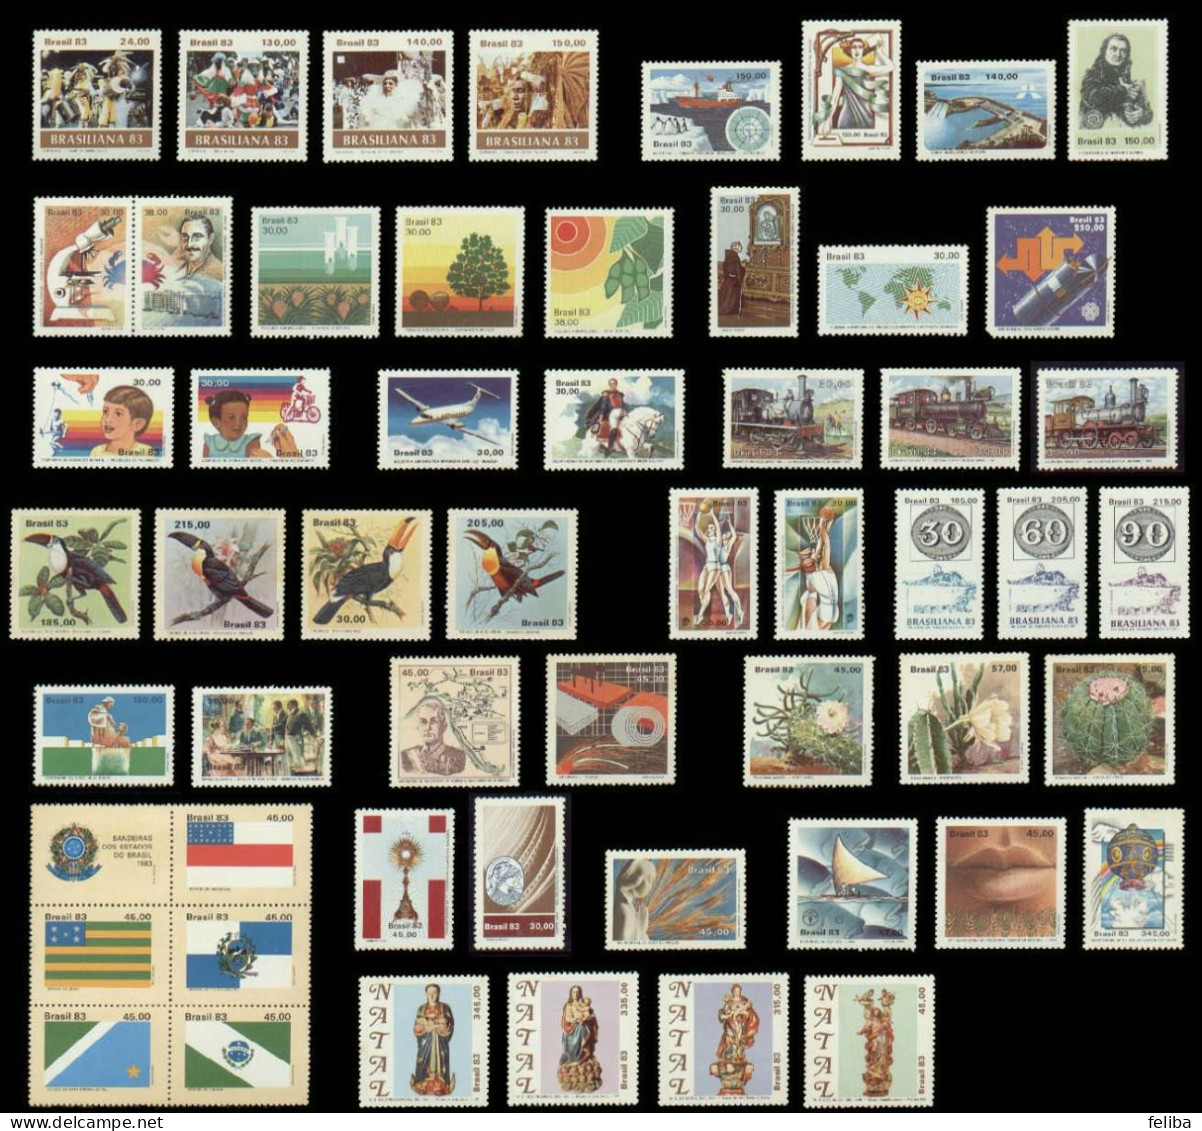 Brazil 1983 MNH Commemorative Stamps - Komplette Jahrgänge